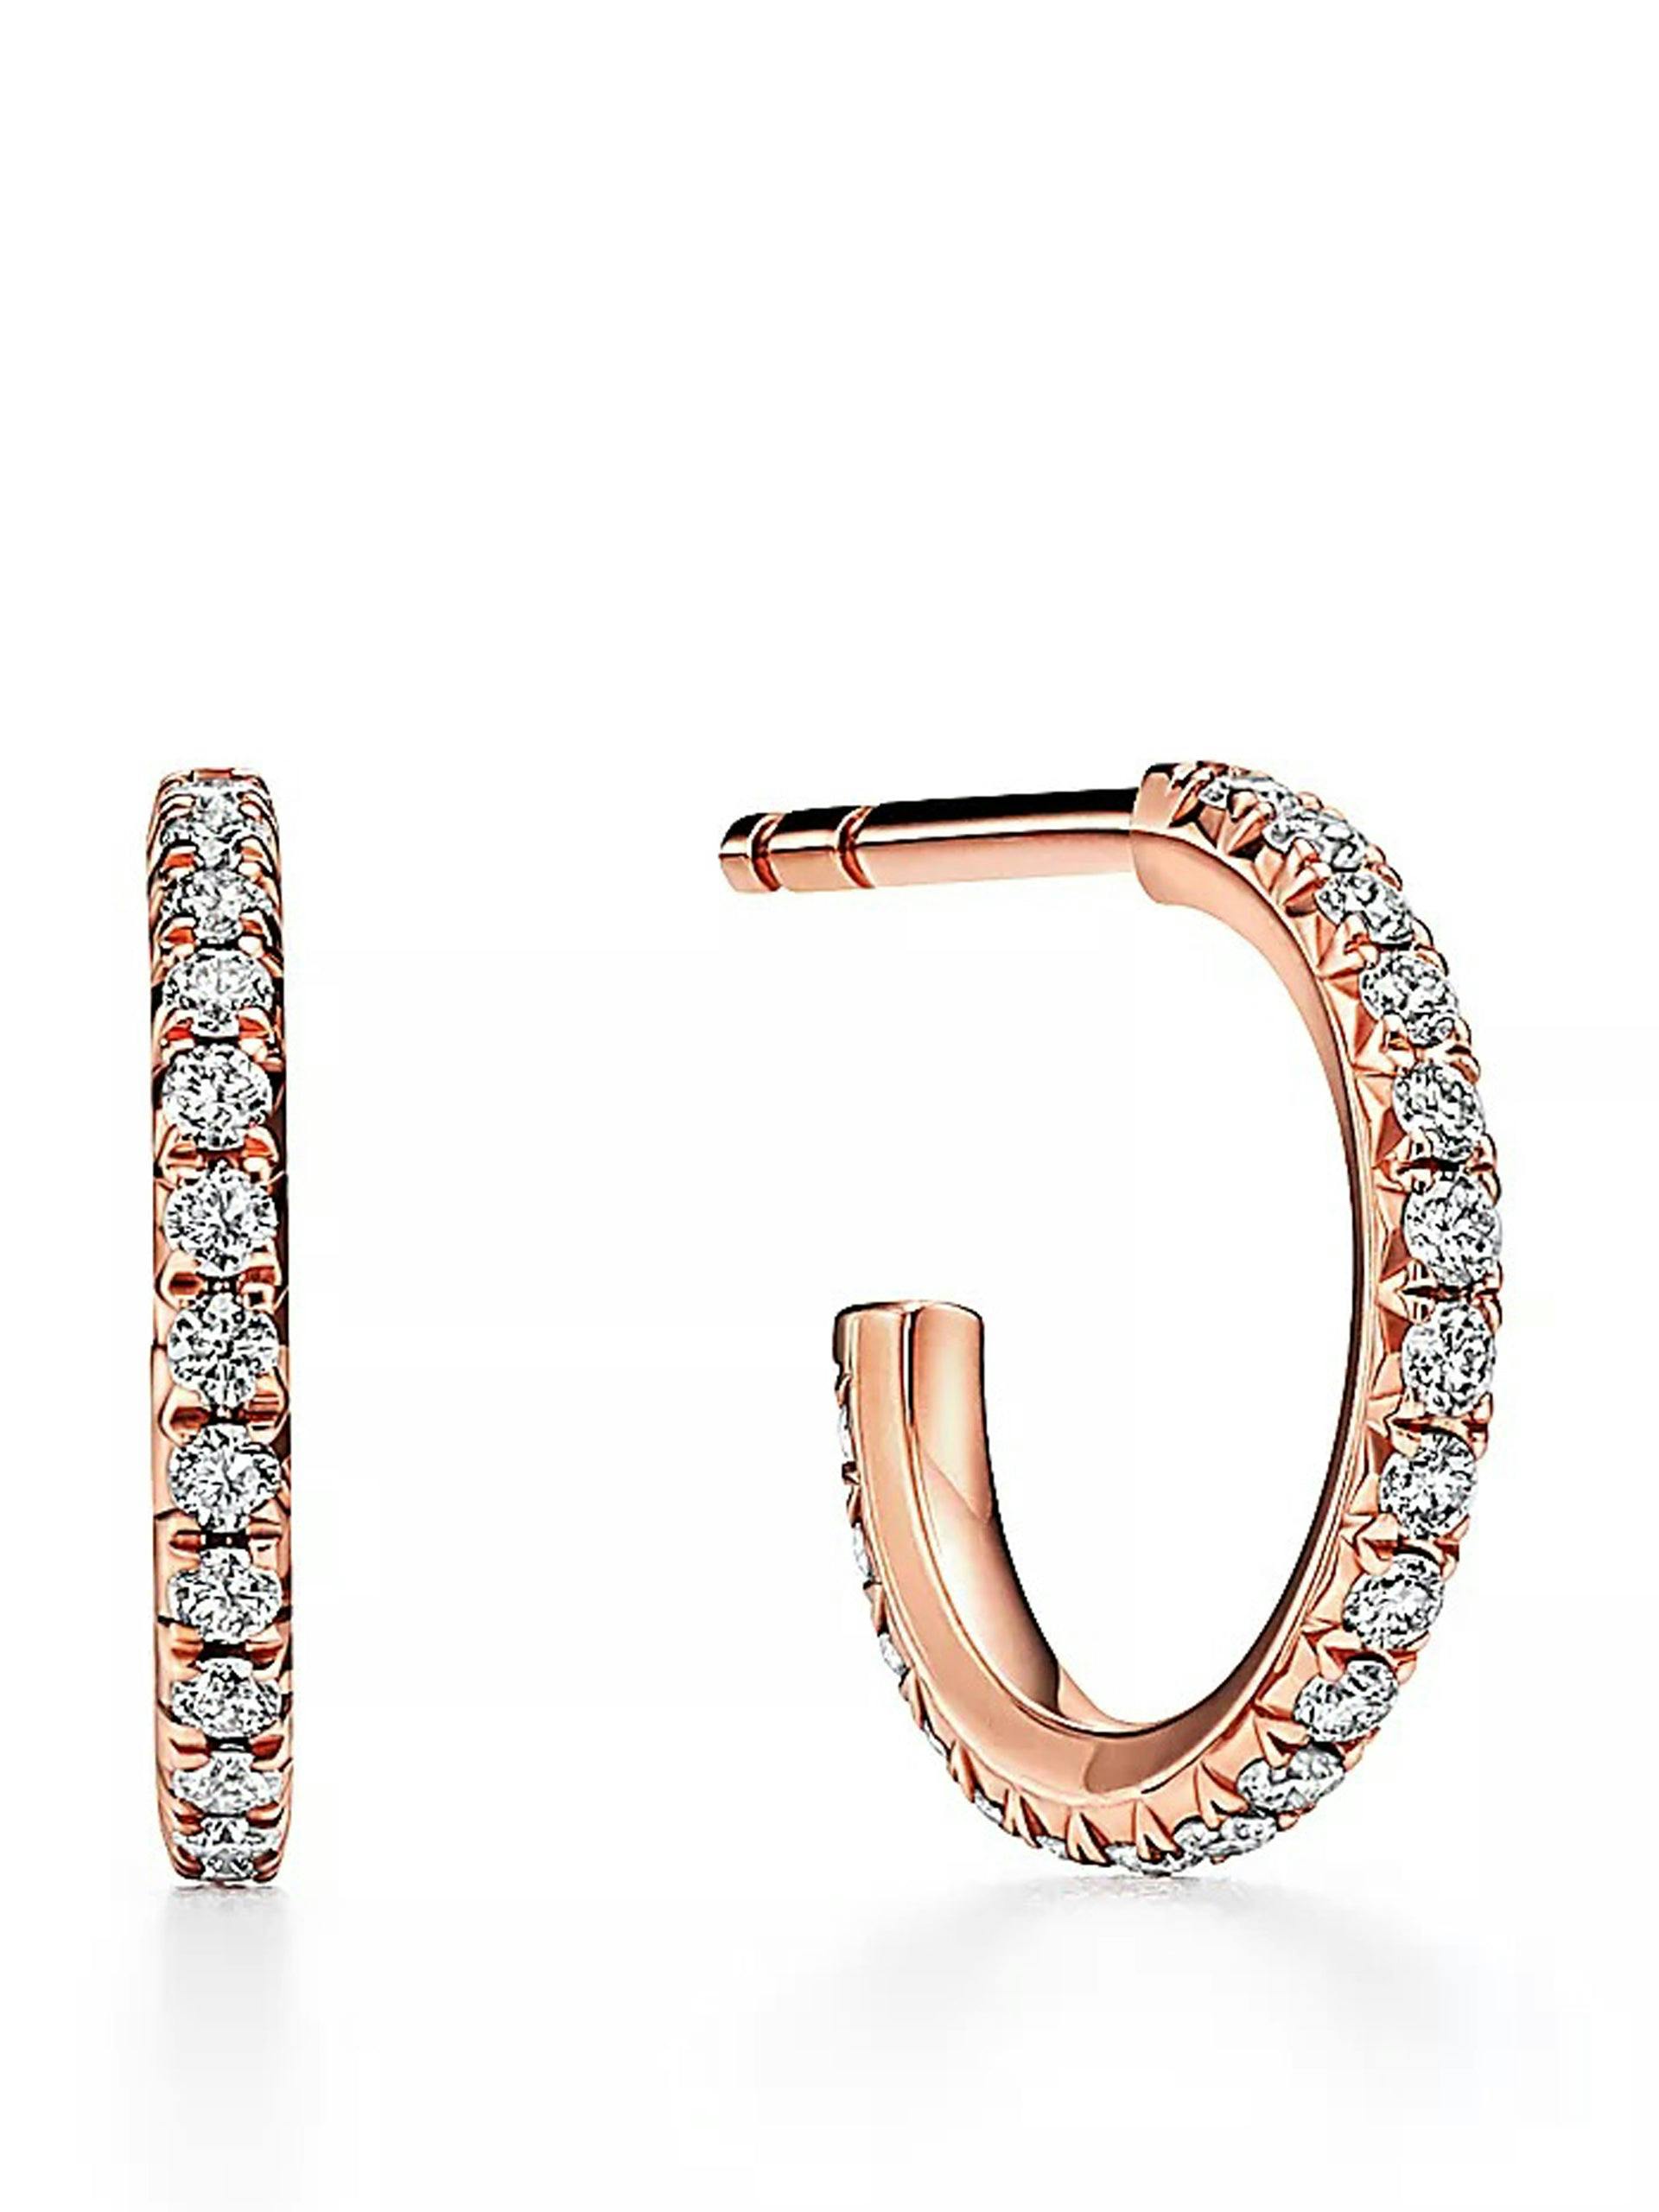 Rose gold diamond hoop earrings